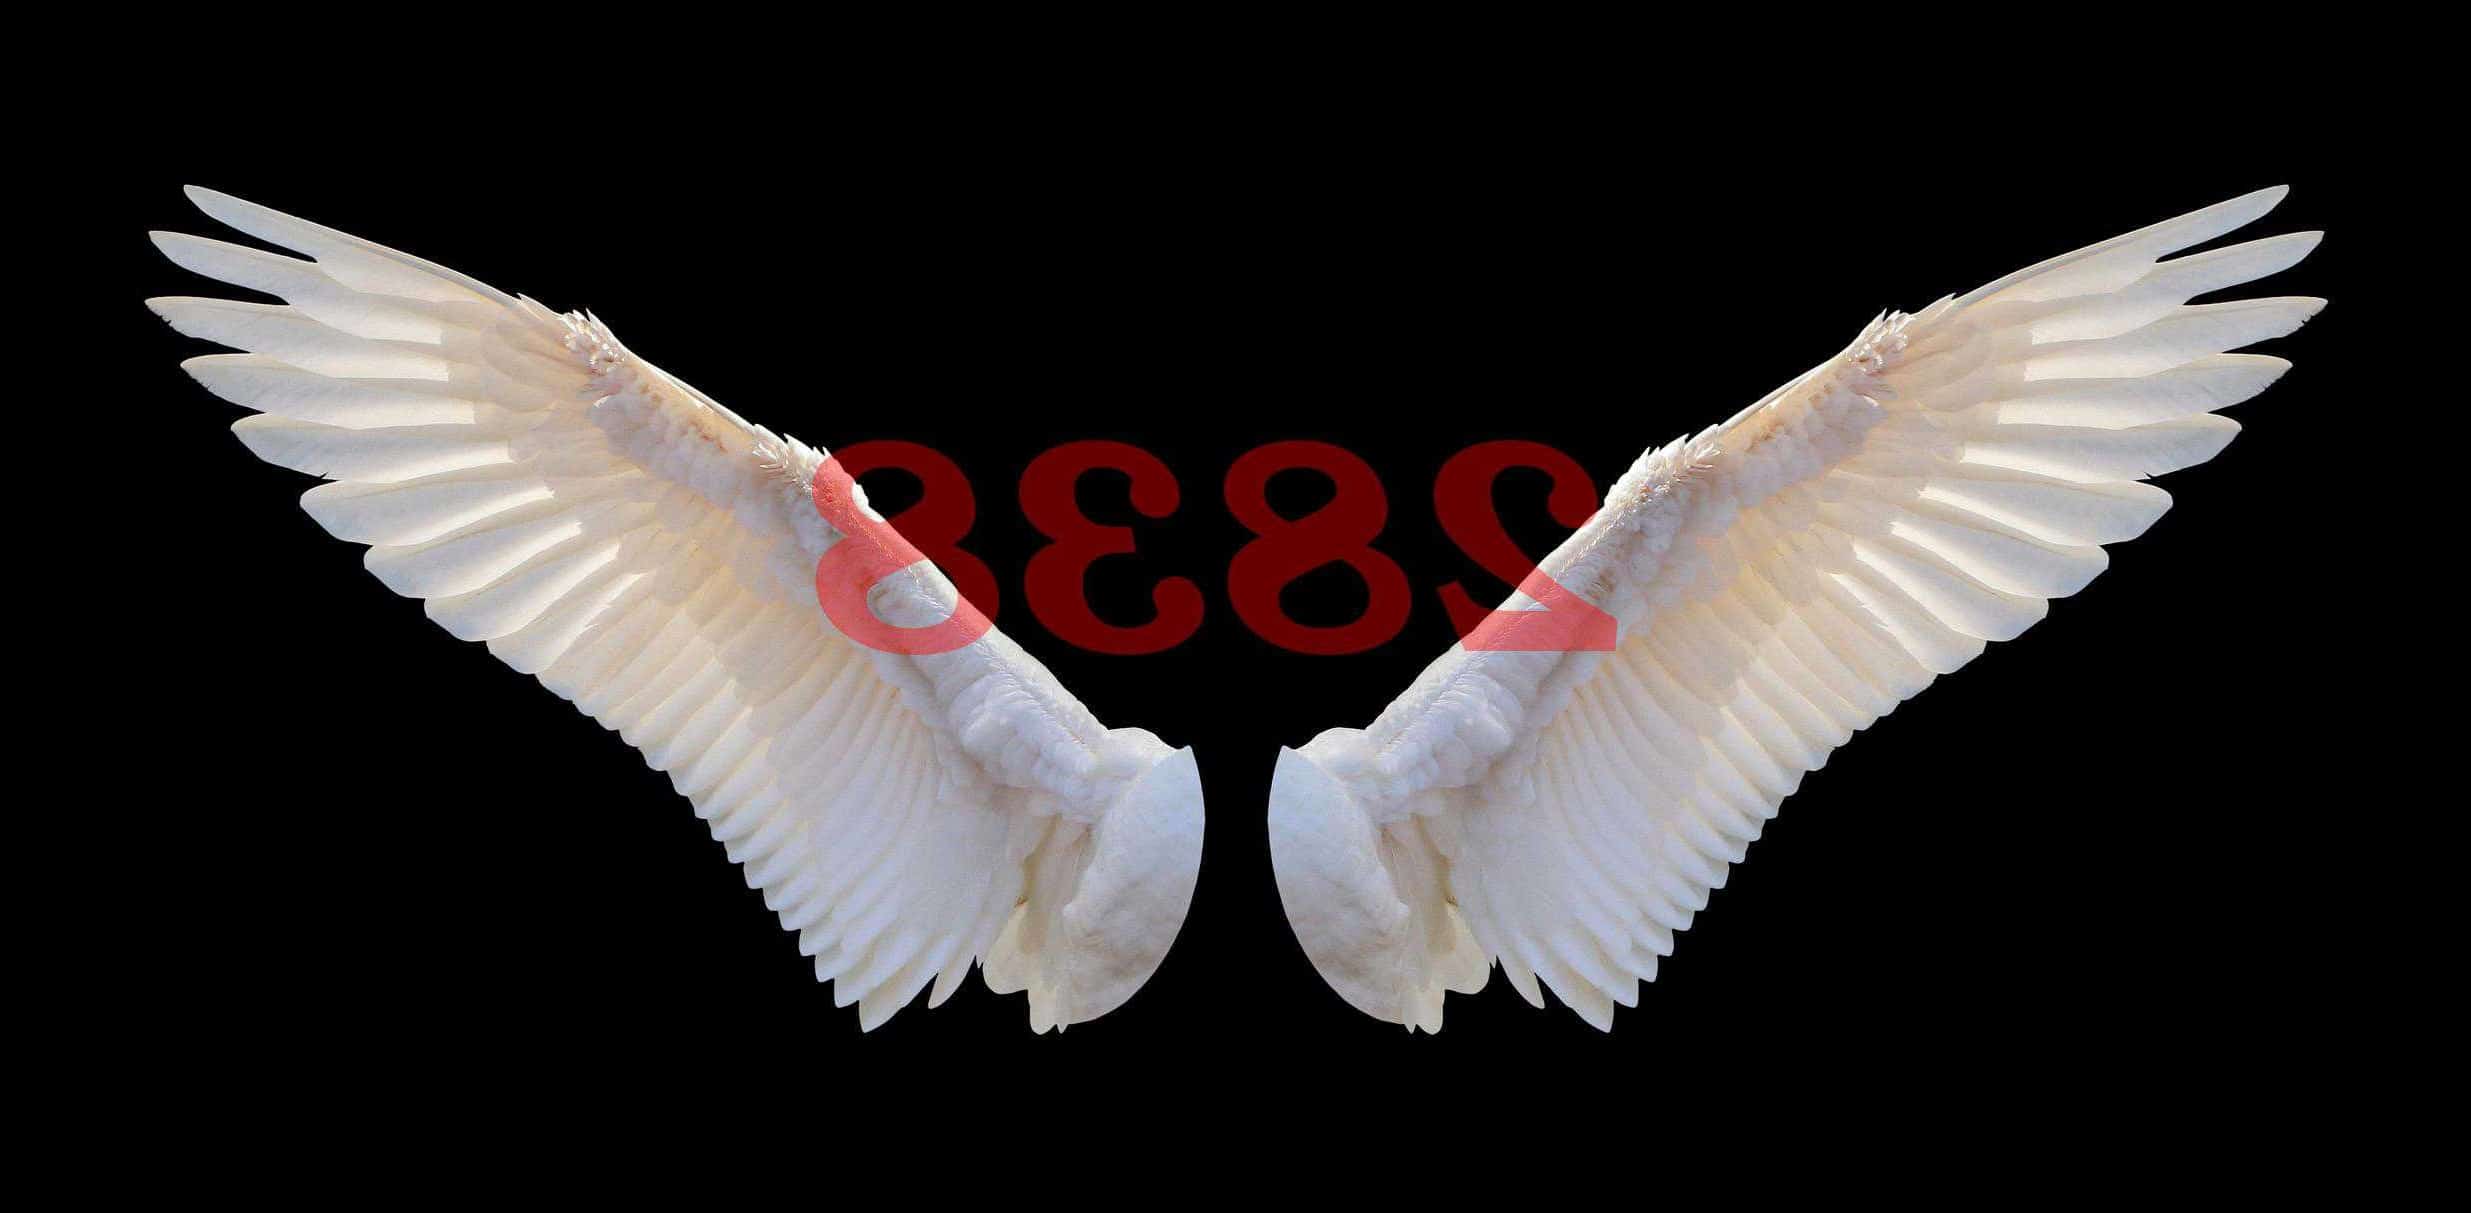 Número de ángel 2838 Significado de numerología